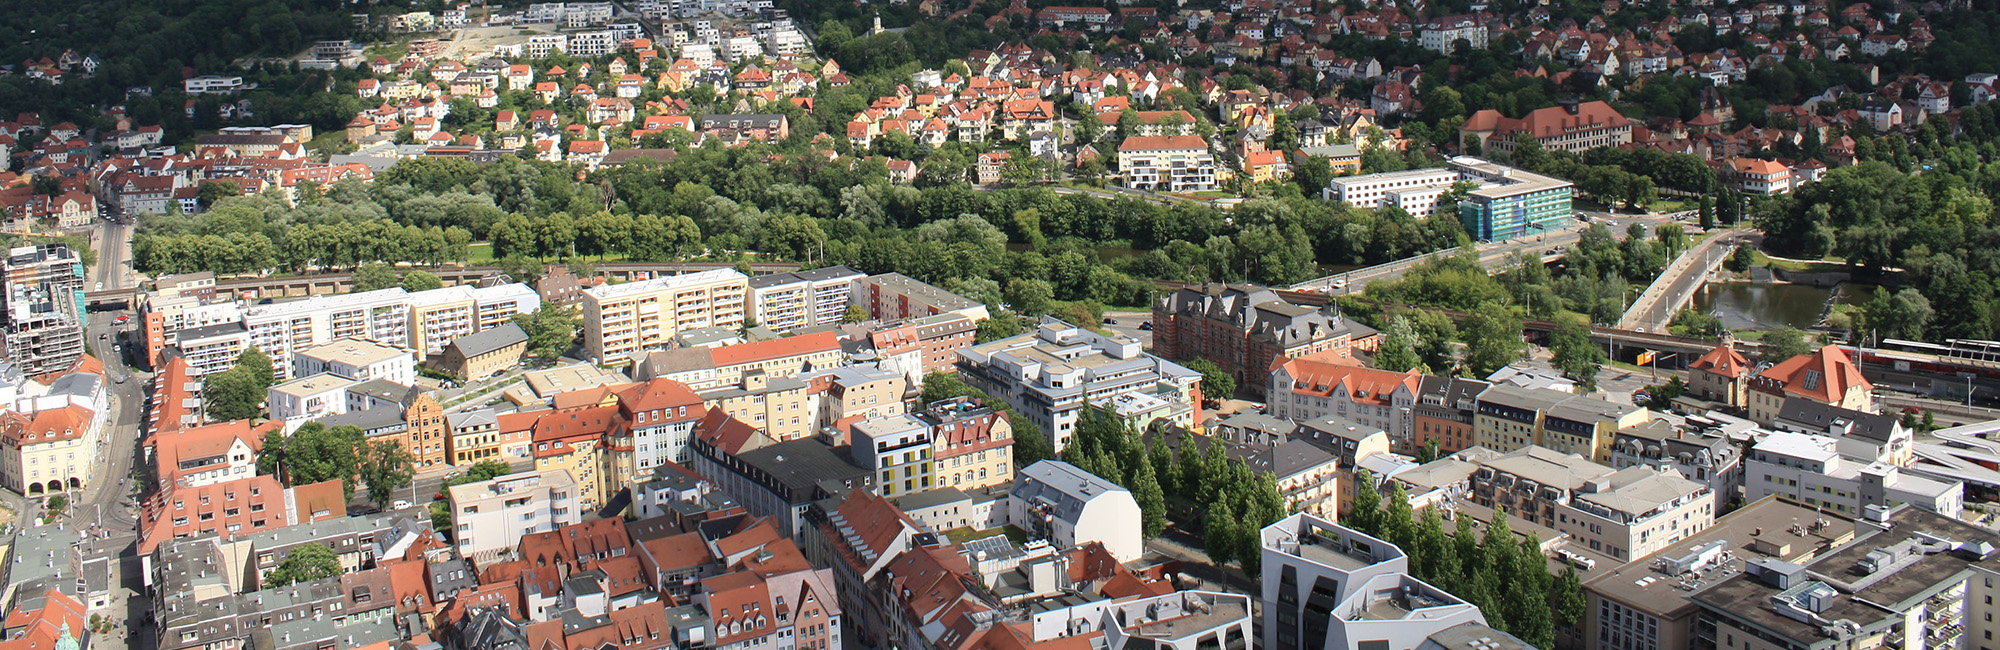 Jena Innenstadt von oben